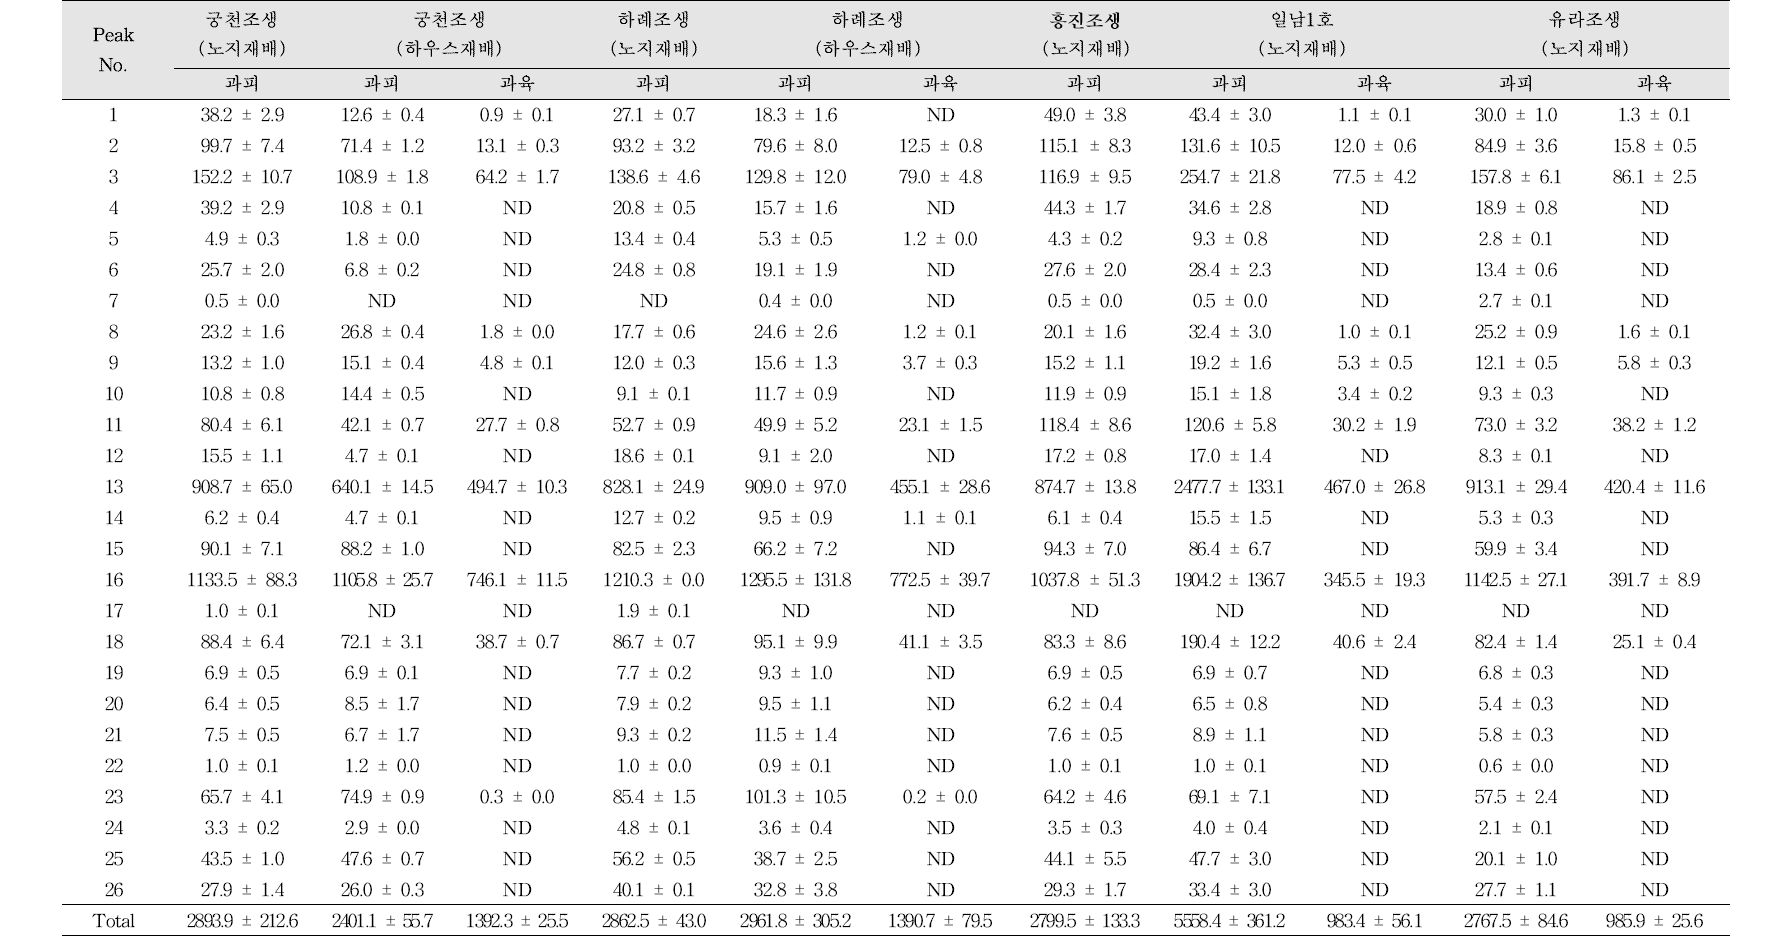 온주밀감의 품종 및 부위별 플라보노이드 함량 비교 (mg/100 g, 건조중량)